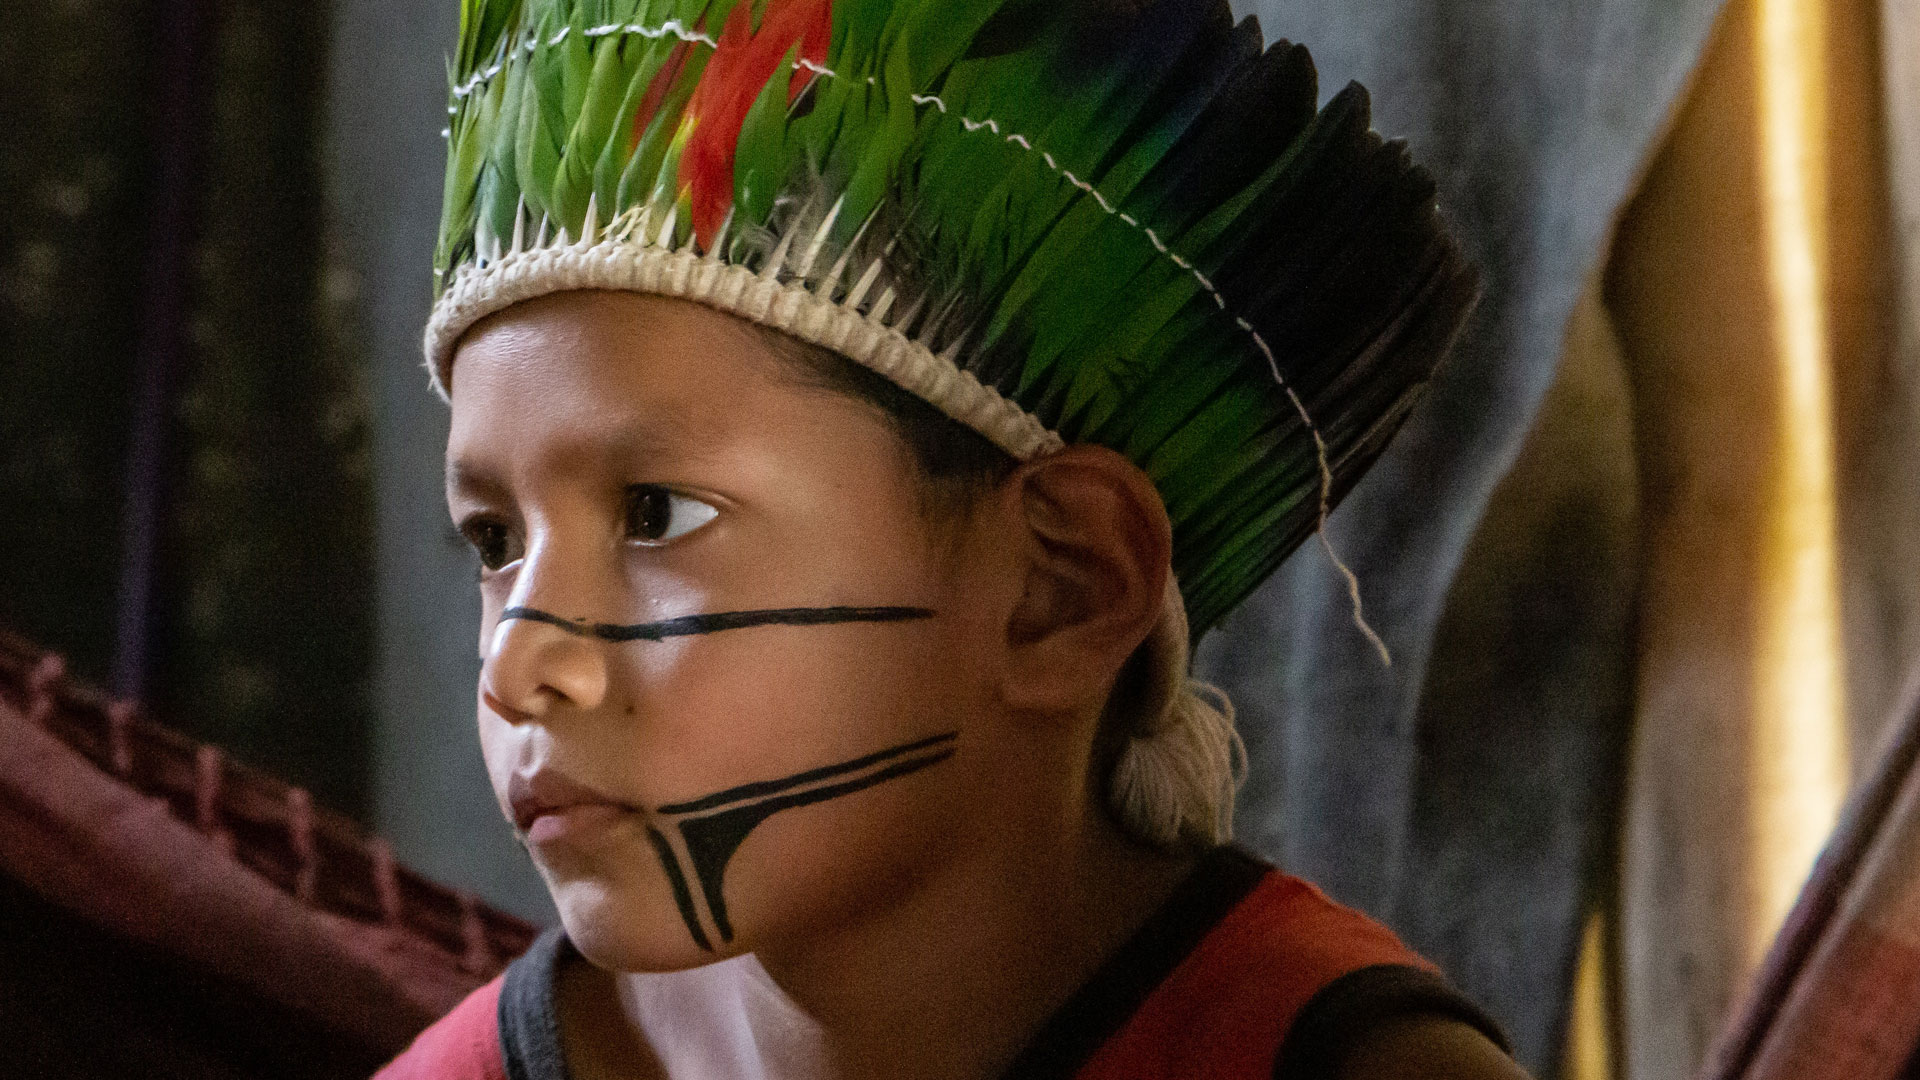 Die Rechte der indigenen Bevölkerung Brasiliens werden durch Gesetze geregelt. Über den Schutz der indigenen Völker wacht seit 1901 die Behörde FUNAI (Fundação Nacional do Índio).